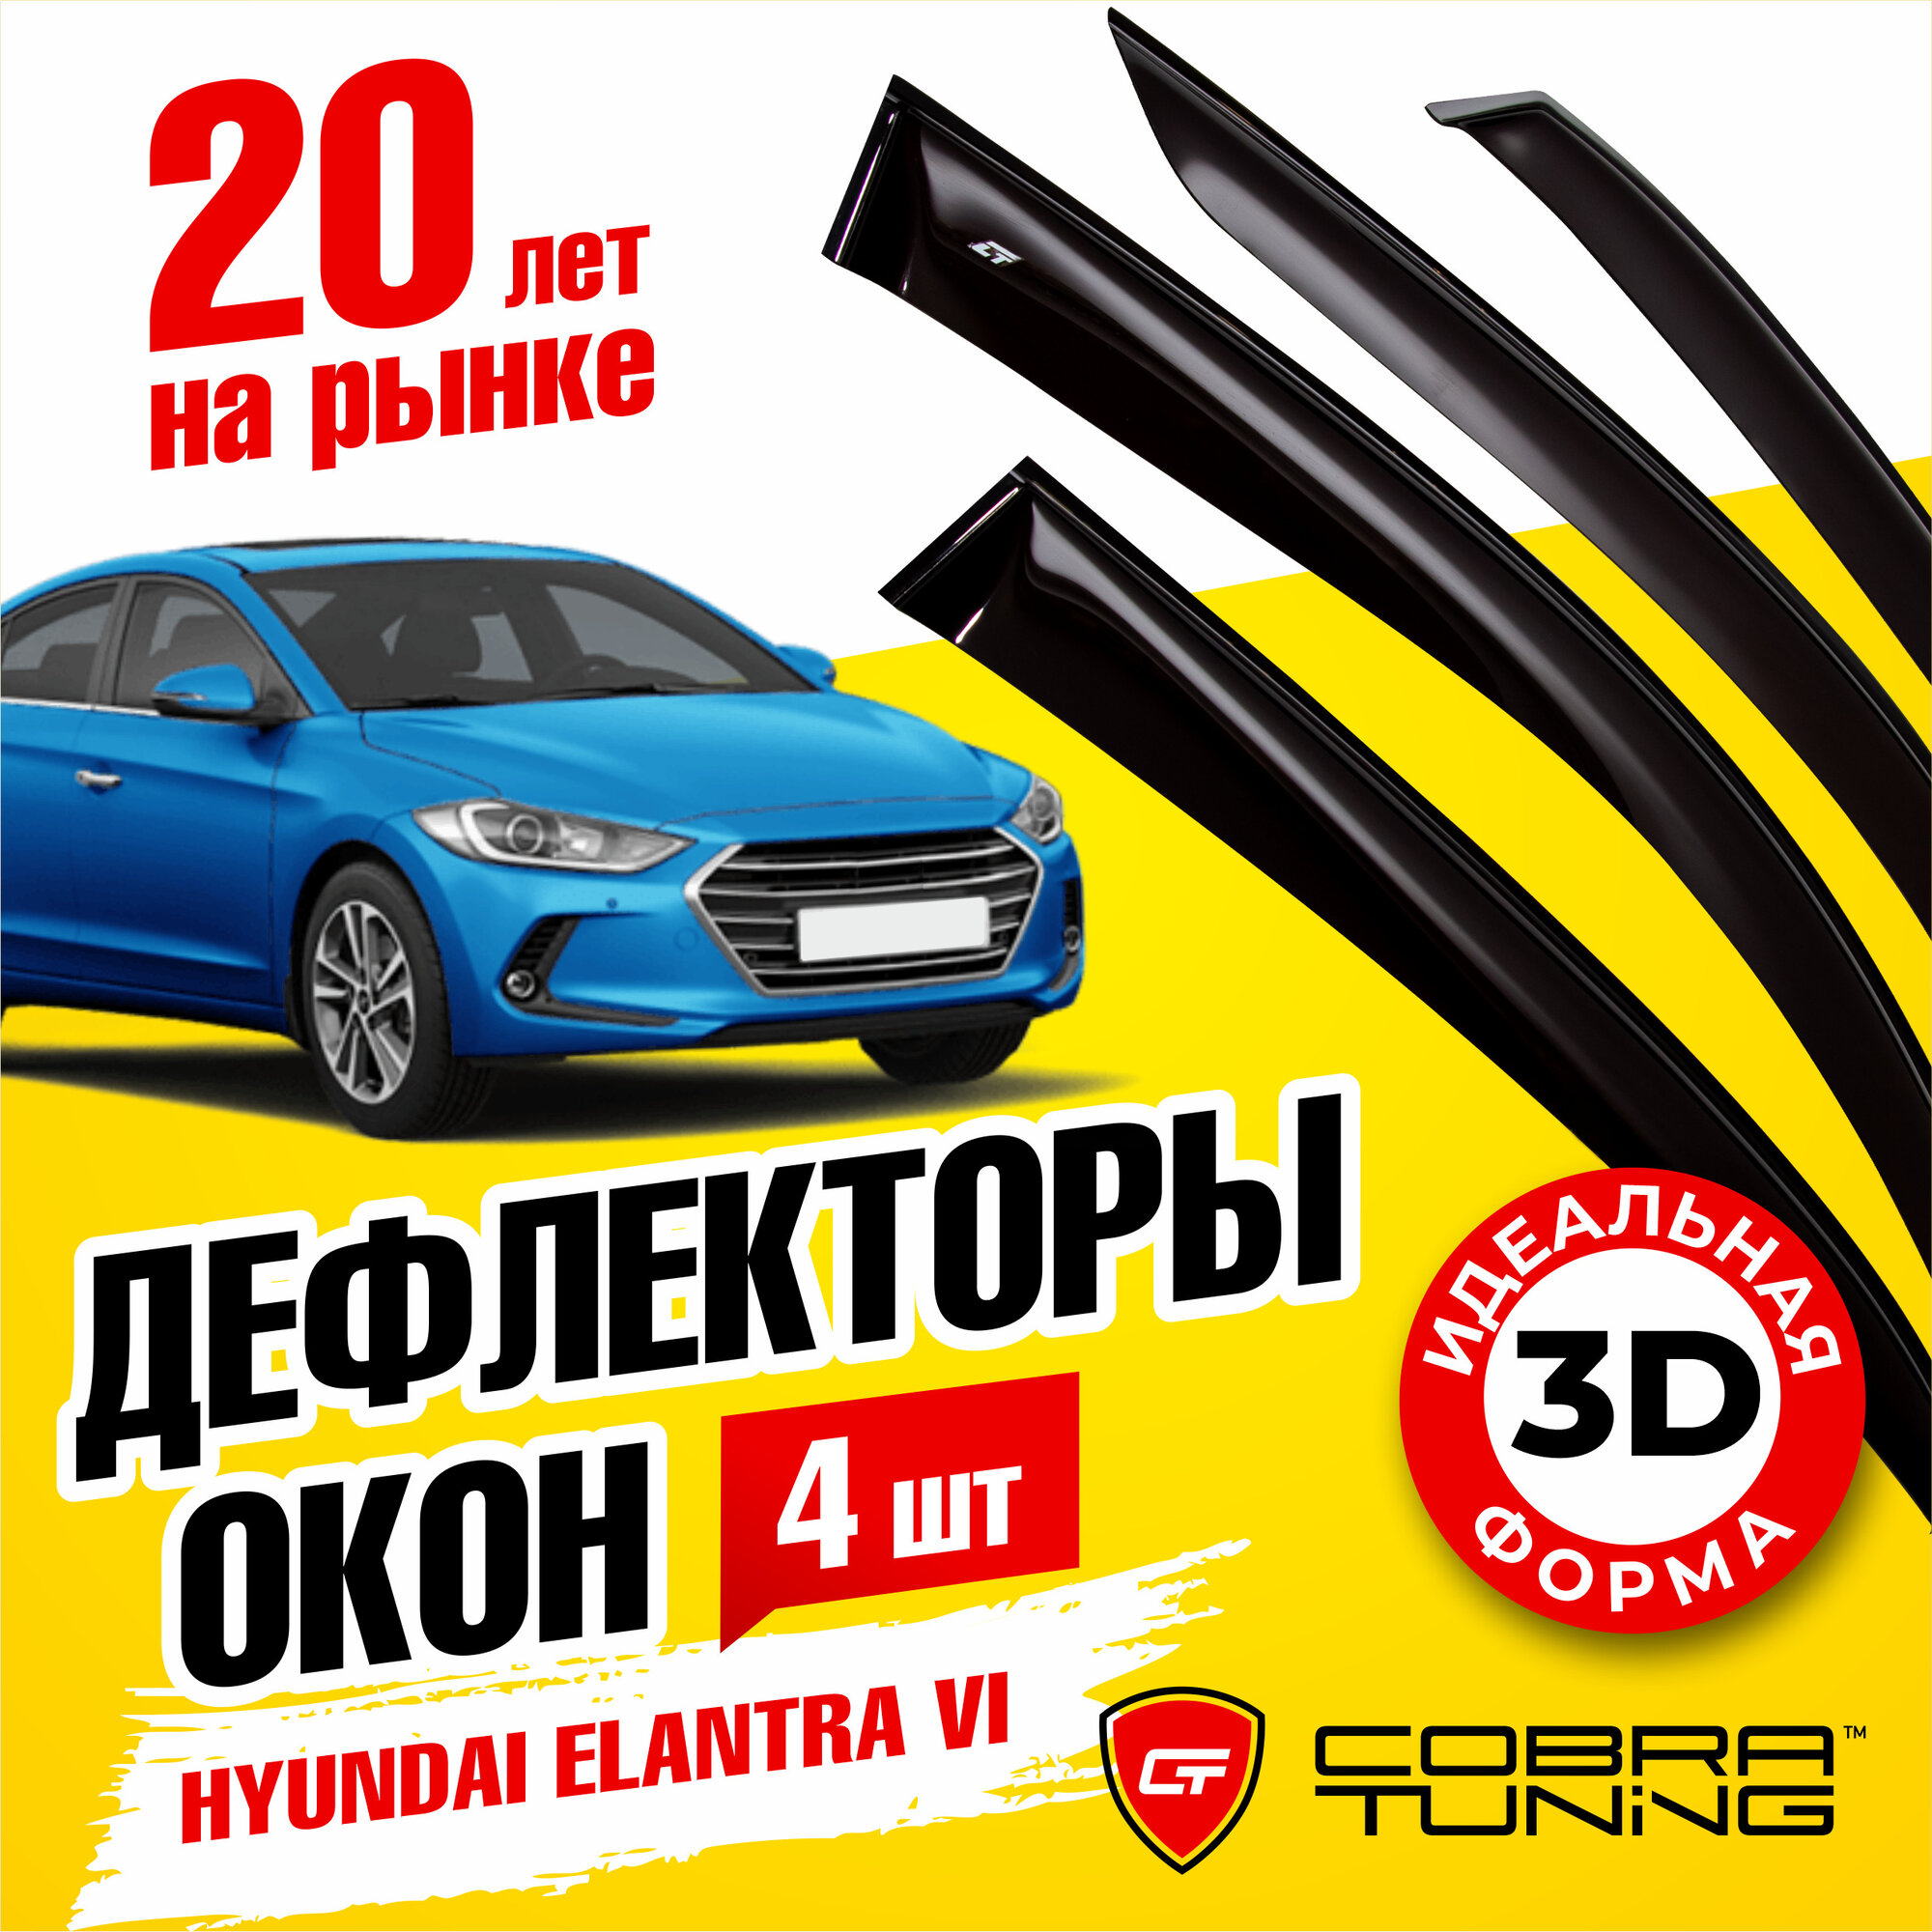 Дефлекторы боковых окон для Hyundai Elantra 6 (Хендай Элантра) седан 2016-2019, ветровики на двери автомобиля, Cobra Tuning